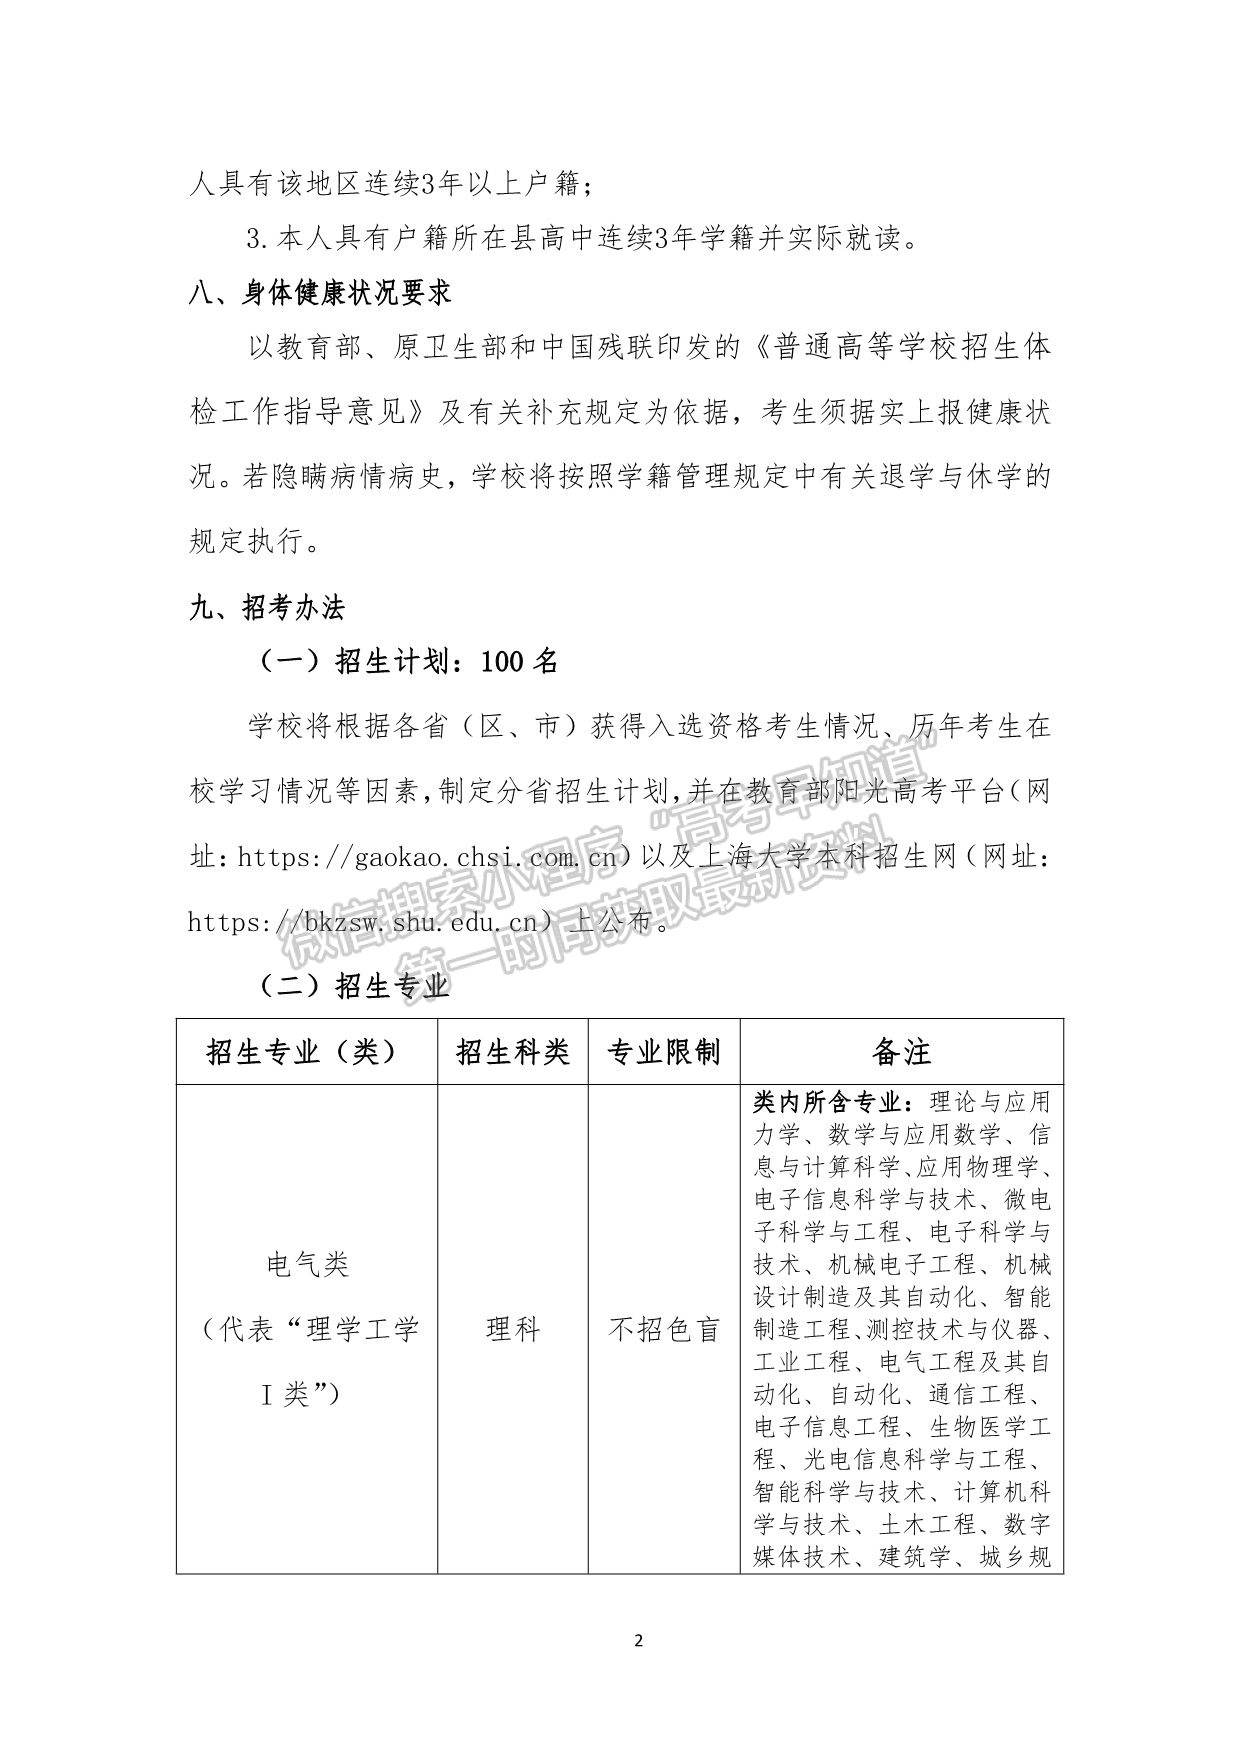 上海大学2021年高校专项计划暨“启航计划”招生简章